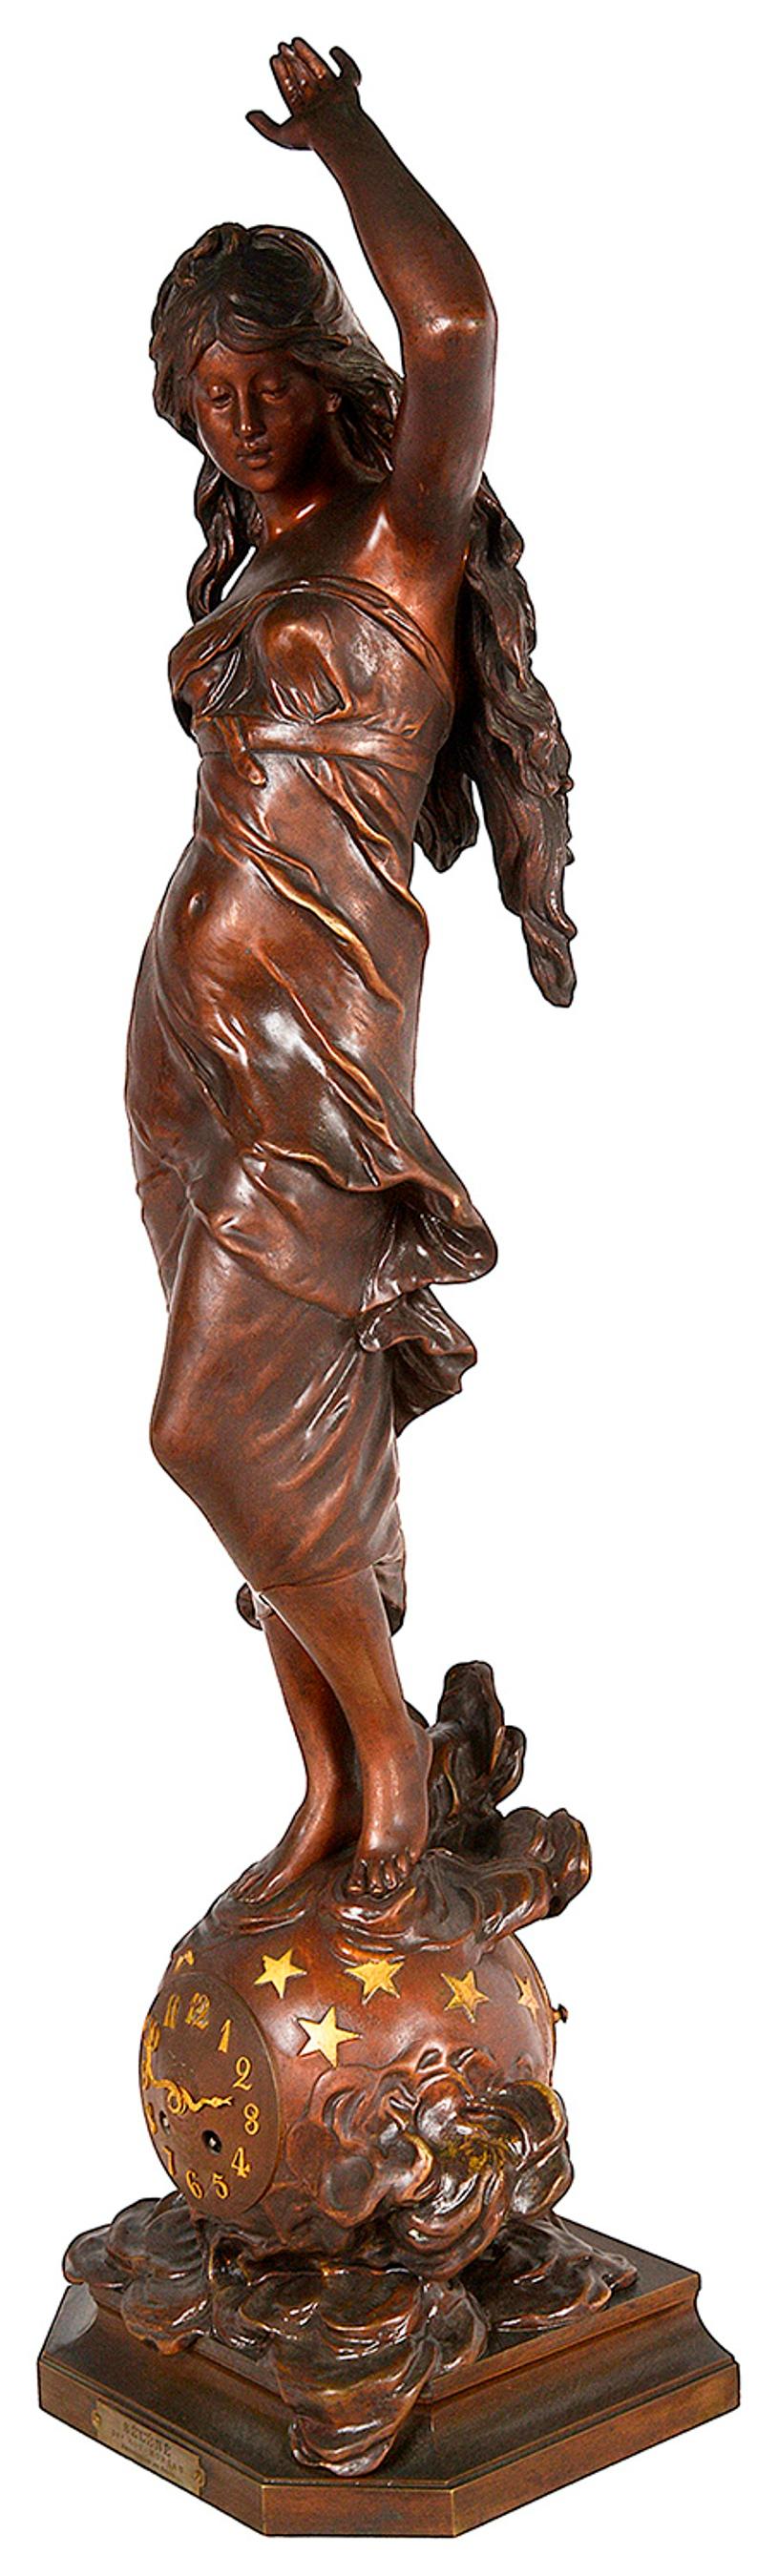 Sculpture en bronze à patine brune comprenant une horloge et signée Auguste Moreau. Il représente une femme portant une robe fluide, debout sur un globe terrestre. Le titre imprimé sur une petite plaque se lit comme suit : SÉLÉNÉ par Aug. MOREAU et